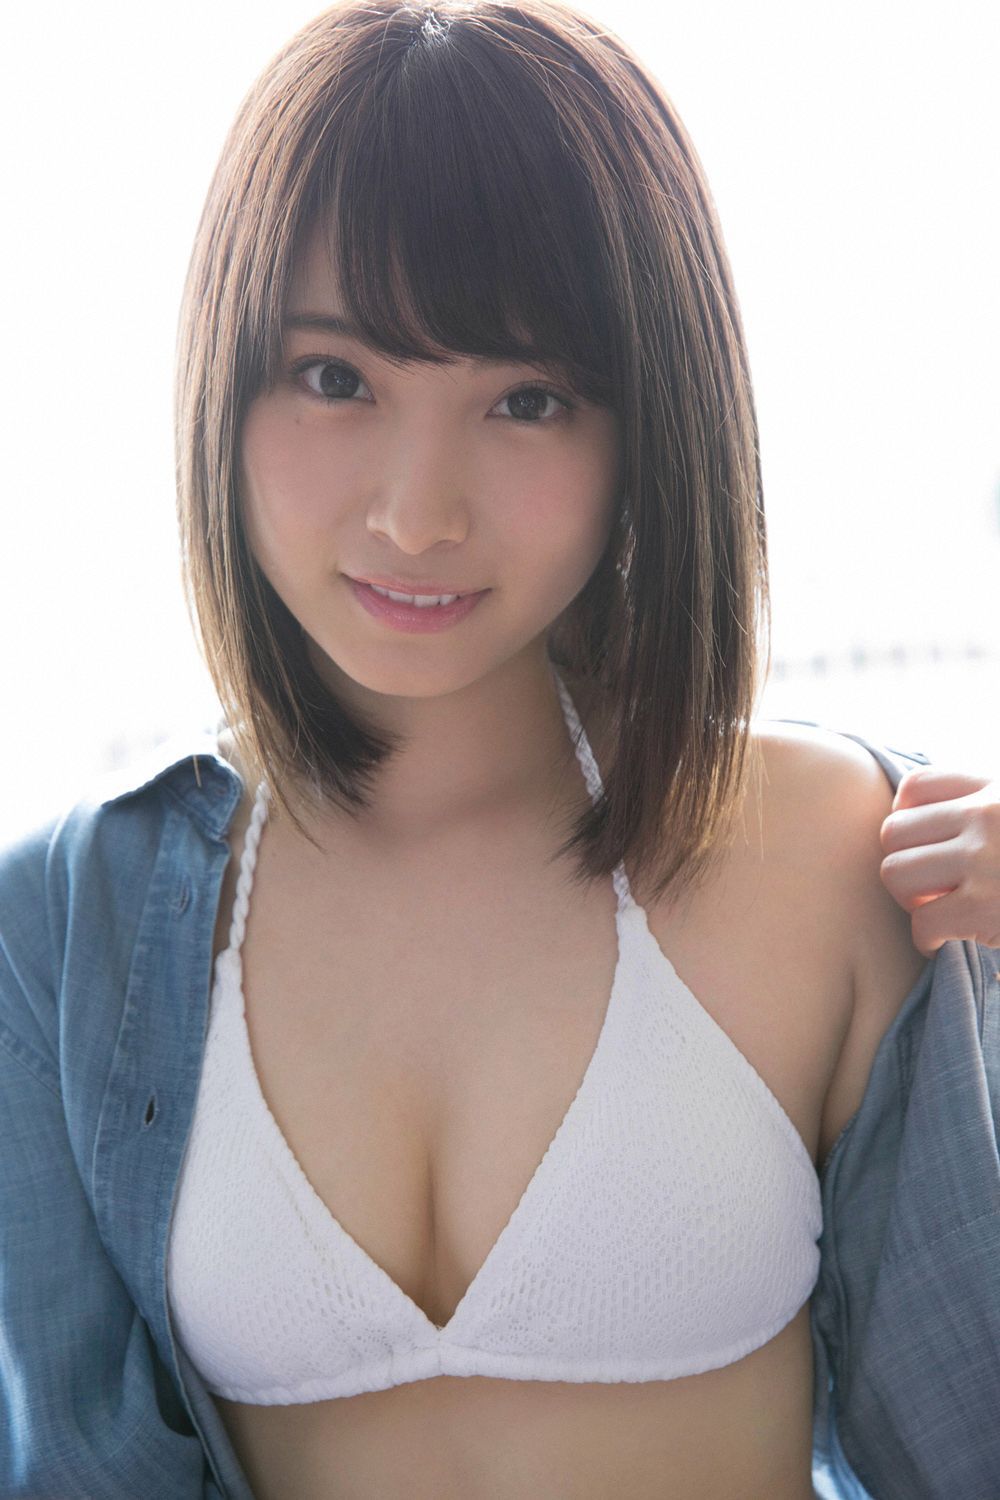 永井理子 Sexy and Hottest Photos , Latest Pics